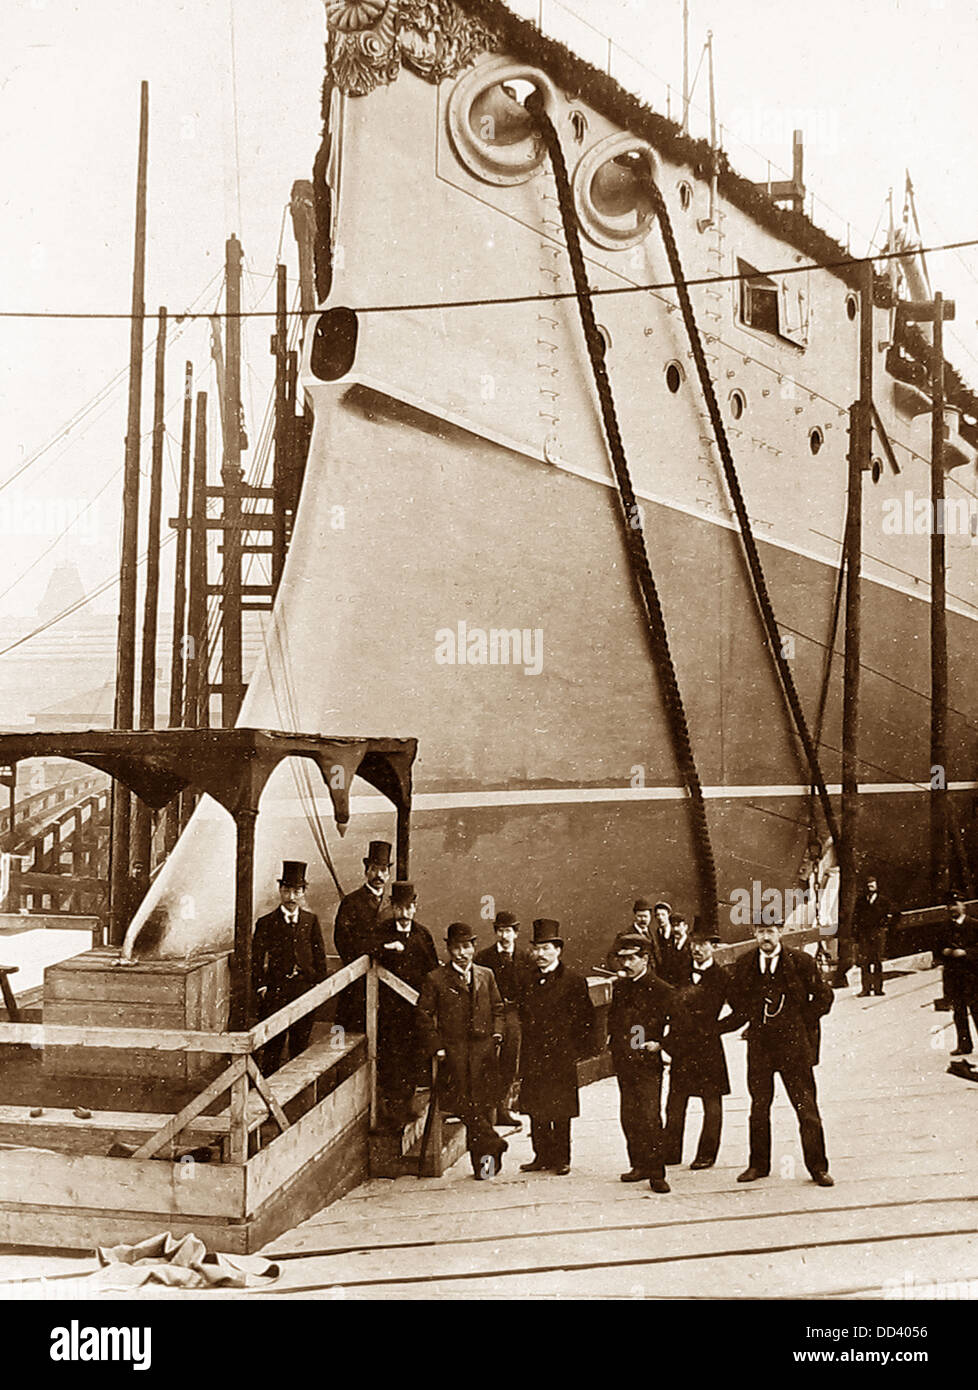 Thames Ironworks et Shipbuilding Company - construire un navire de l'époque Victorienne - la ram bow Banque D'Images